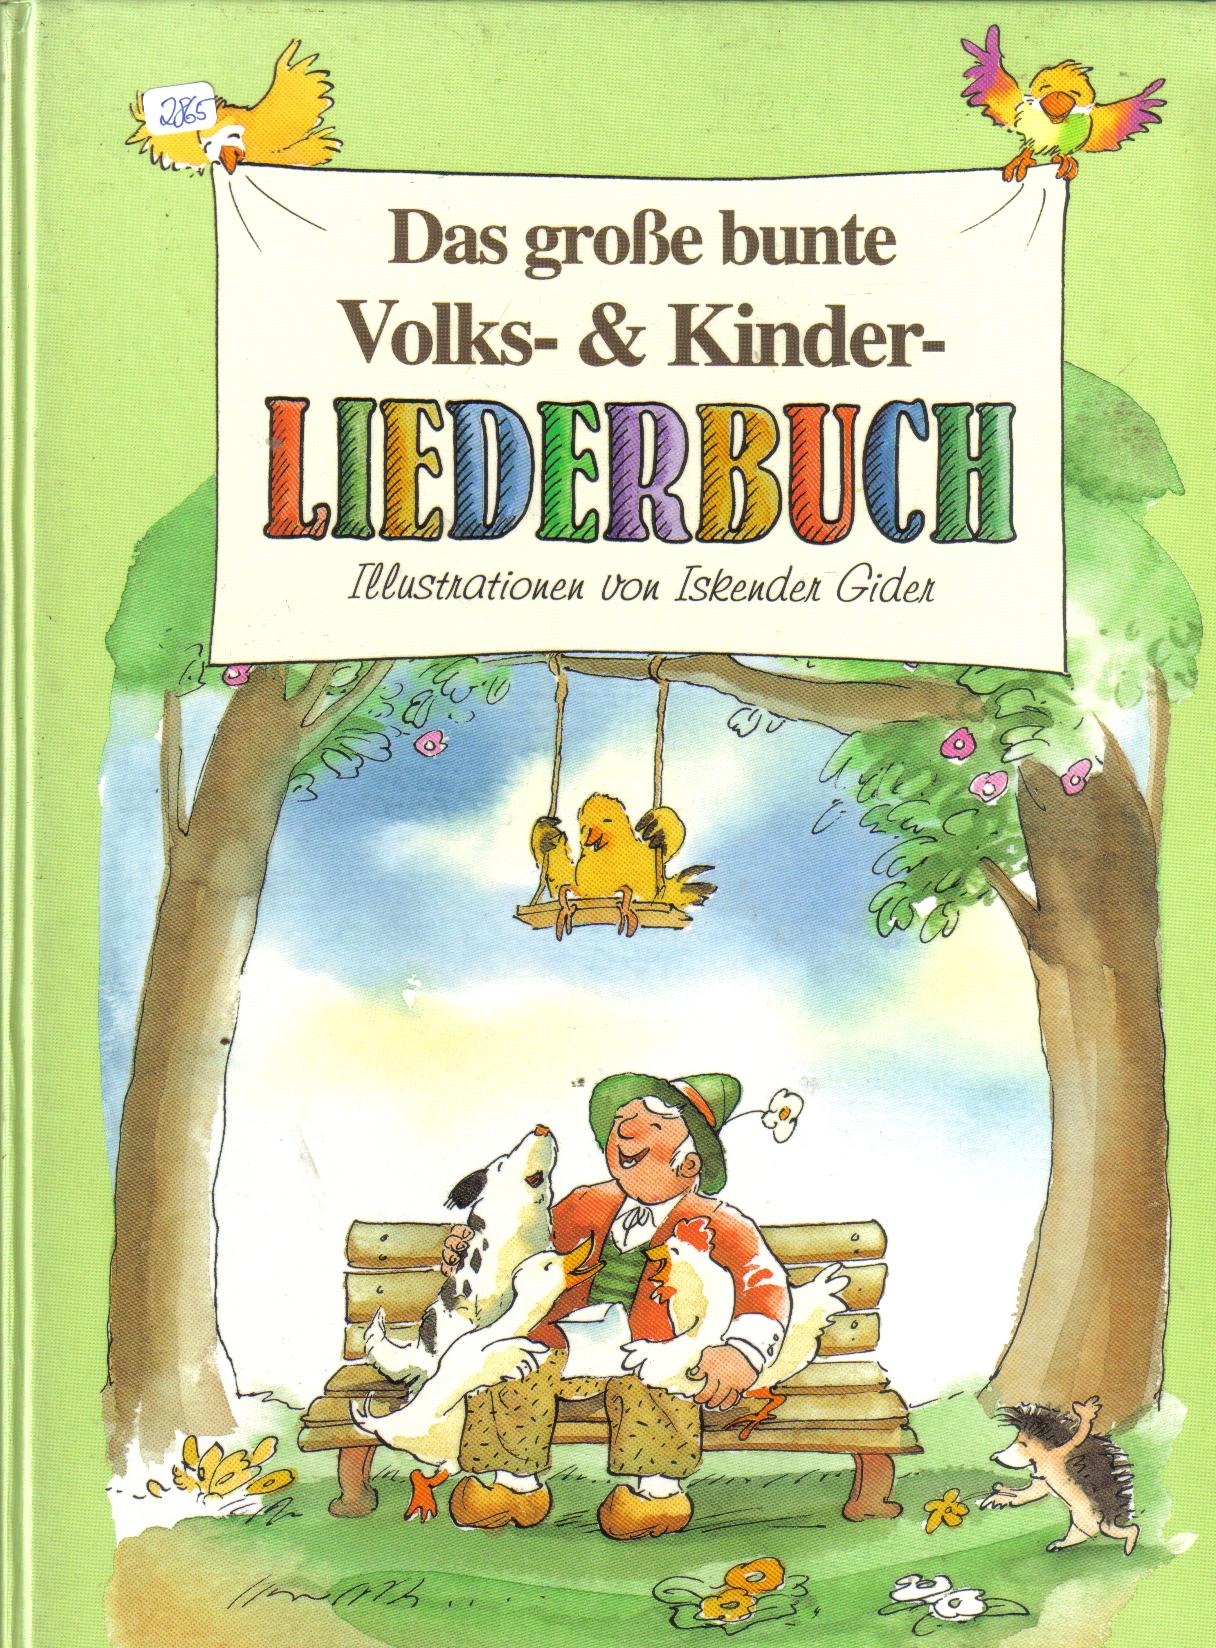 Das grosse bunte Volks-& Kinder LIEDERBUCHIllustrationen von Iskender Gider